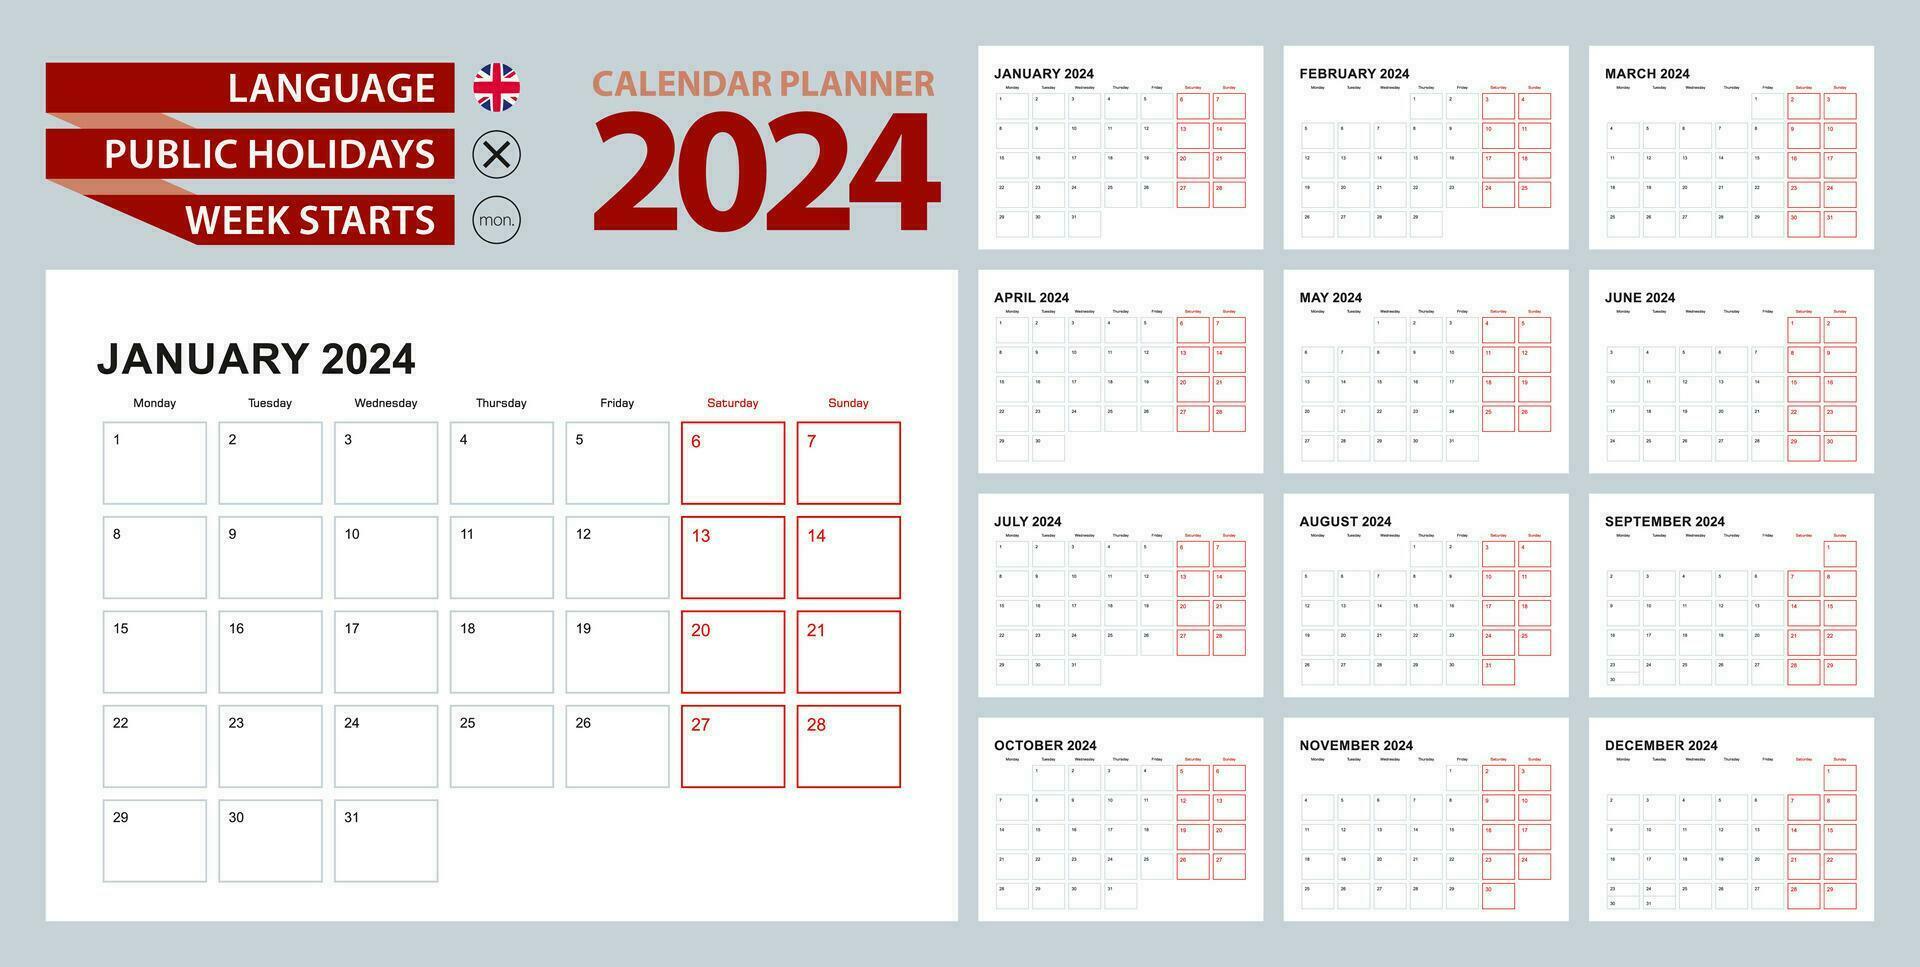 mur calendrier planificateur 2024 dans Anglais, la semaine départs dans lundi. vecteur planificateur.